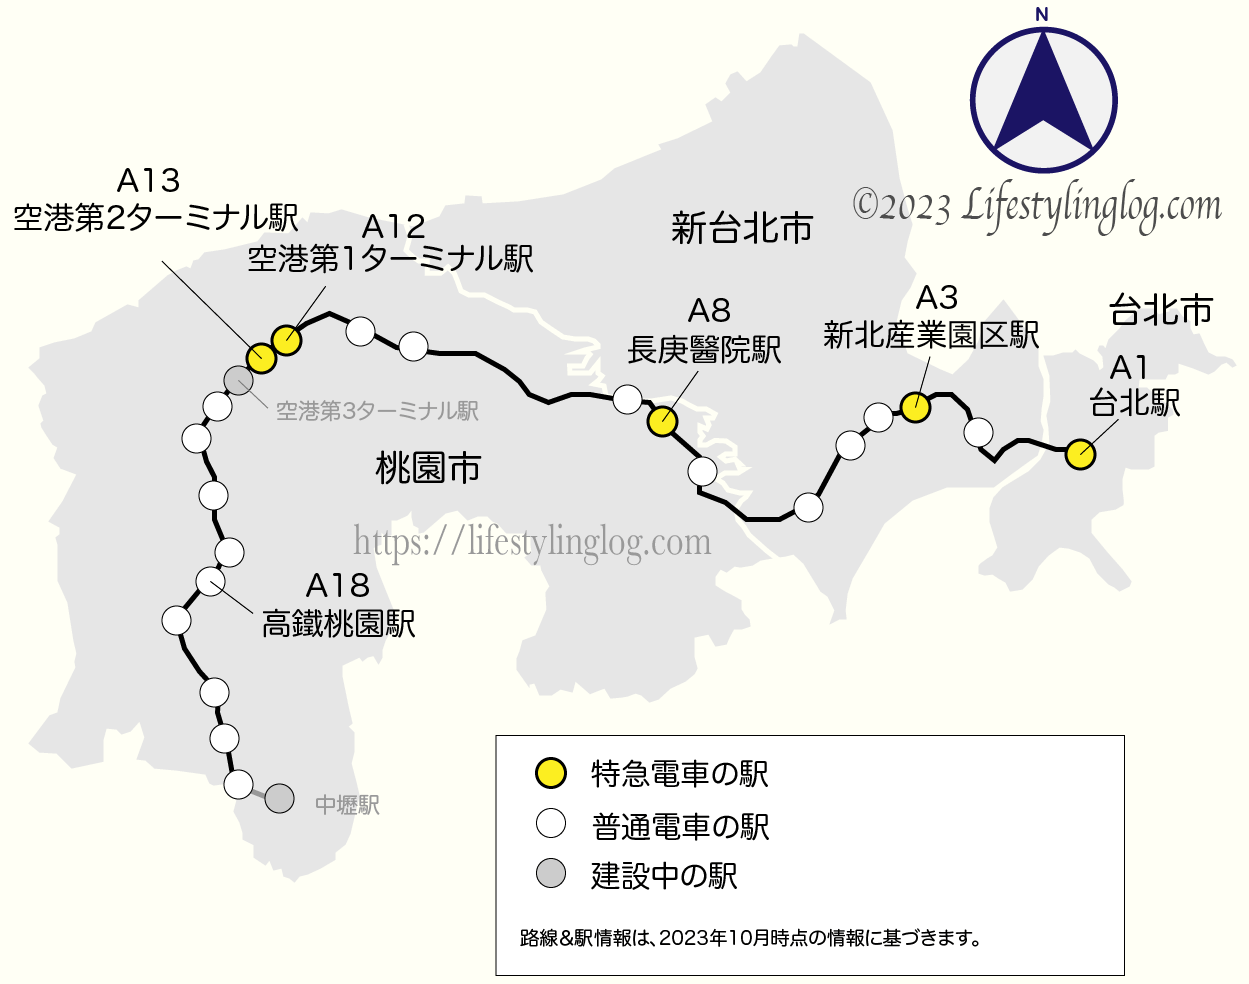 桃園空港MRTの台北駅から空港駅までの路線全体像を示す地図